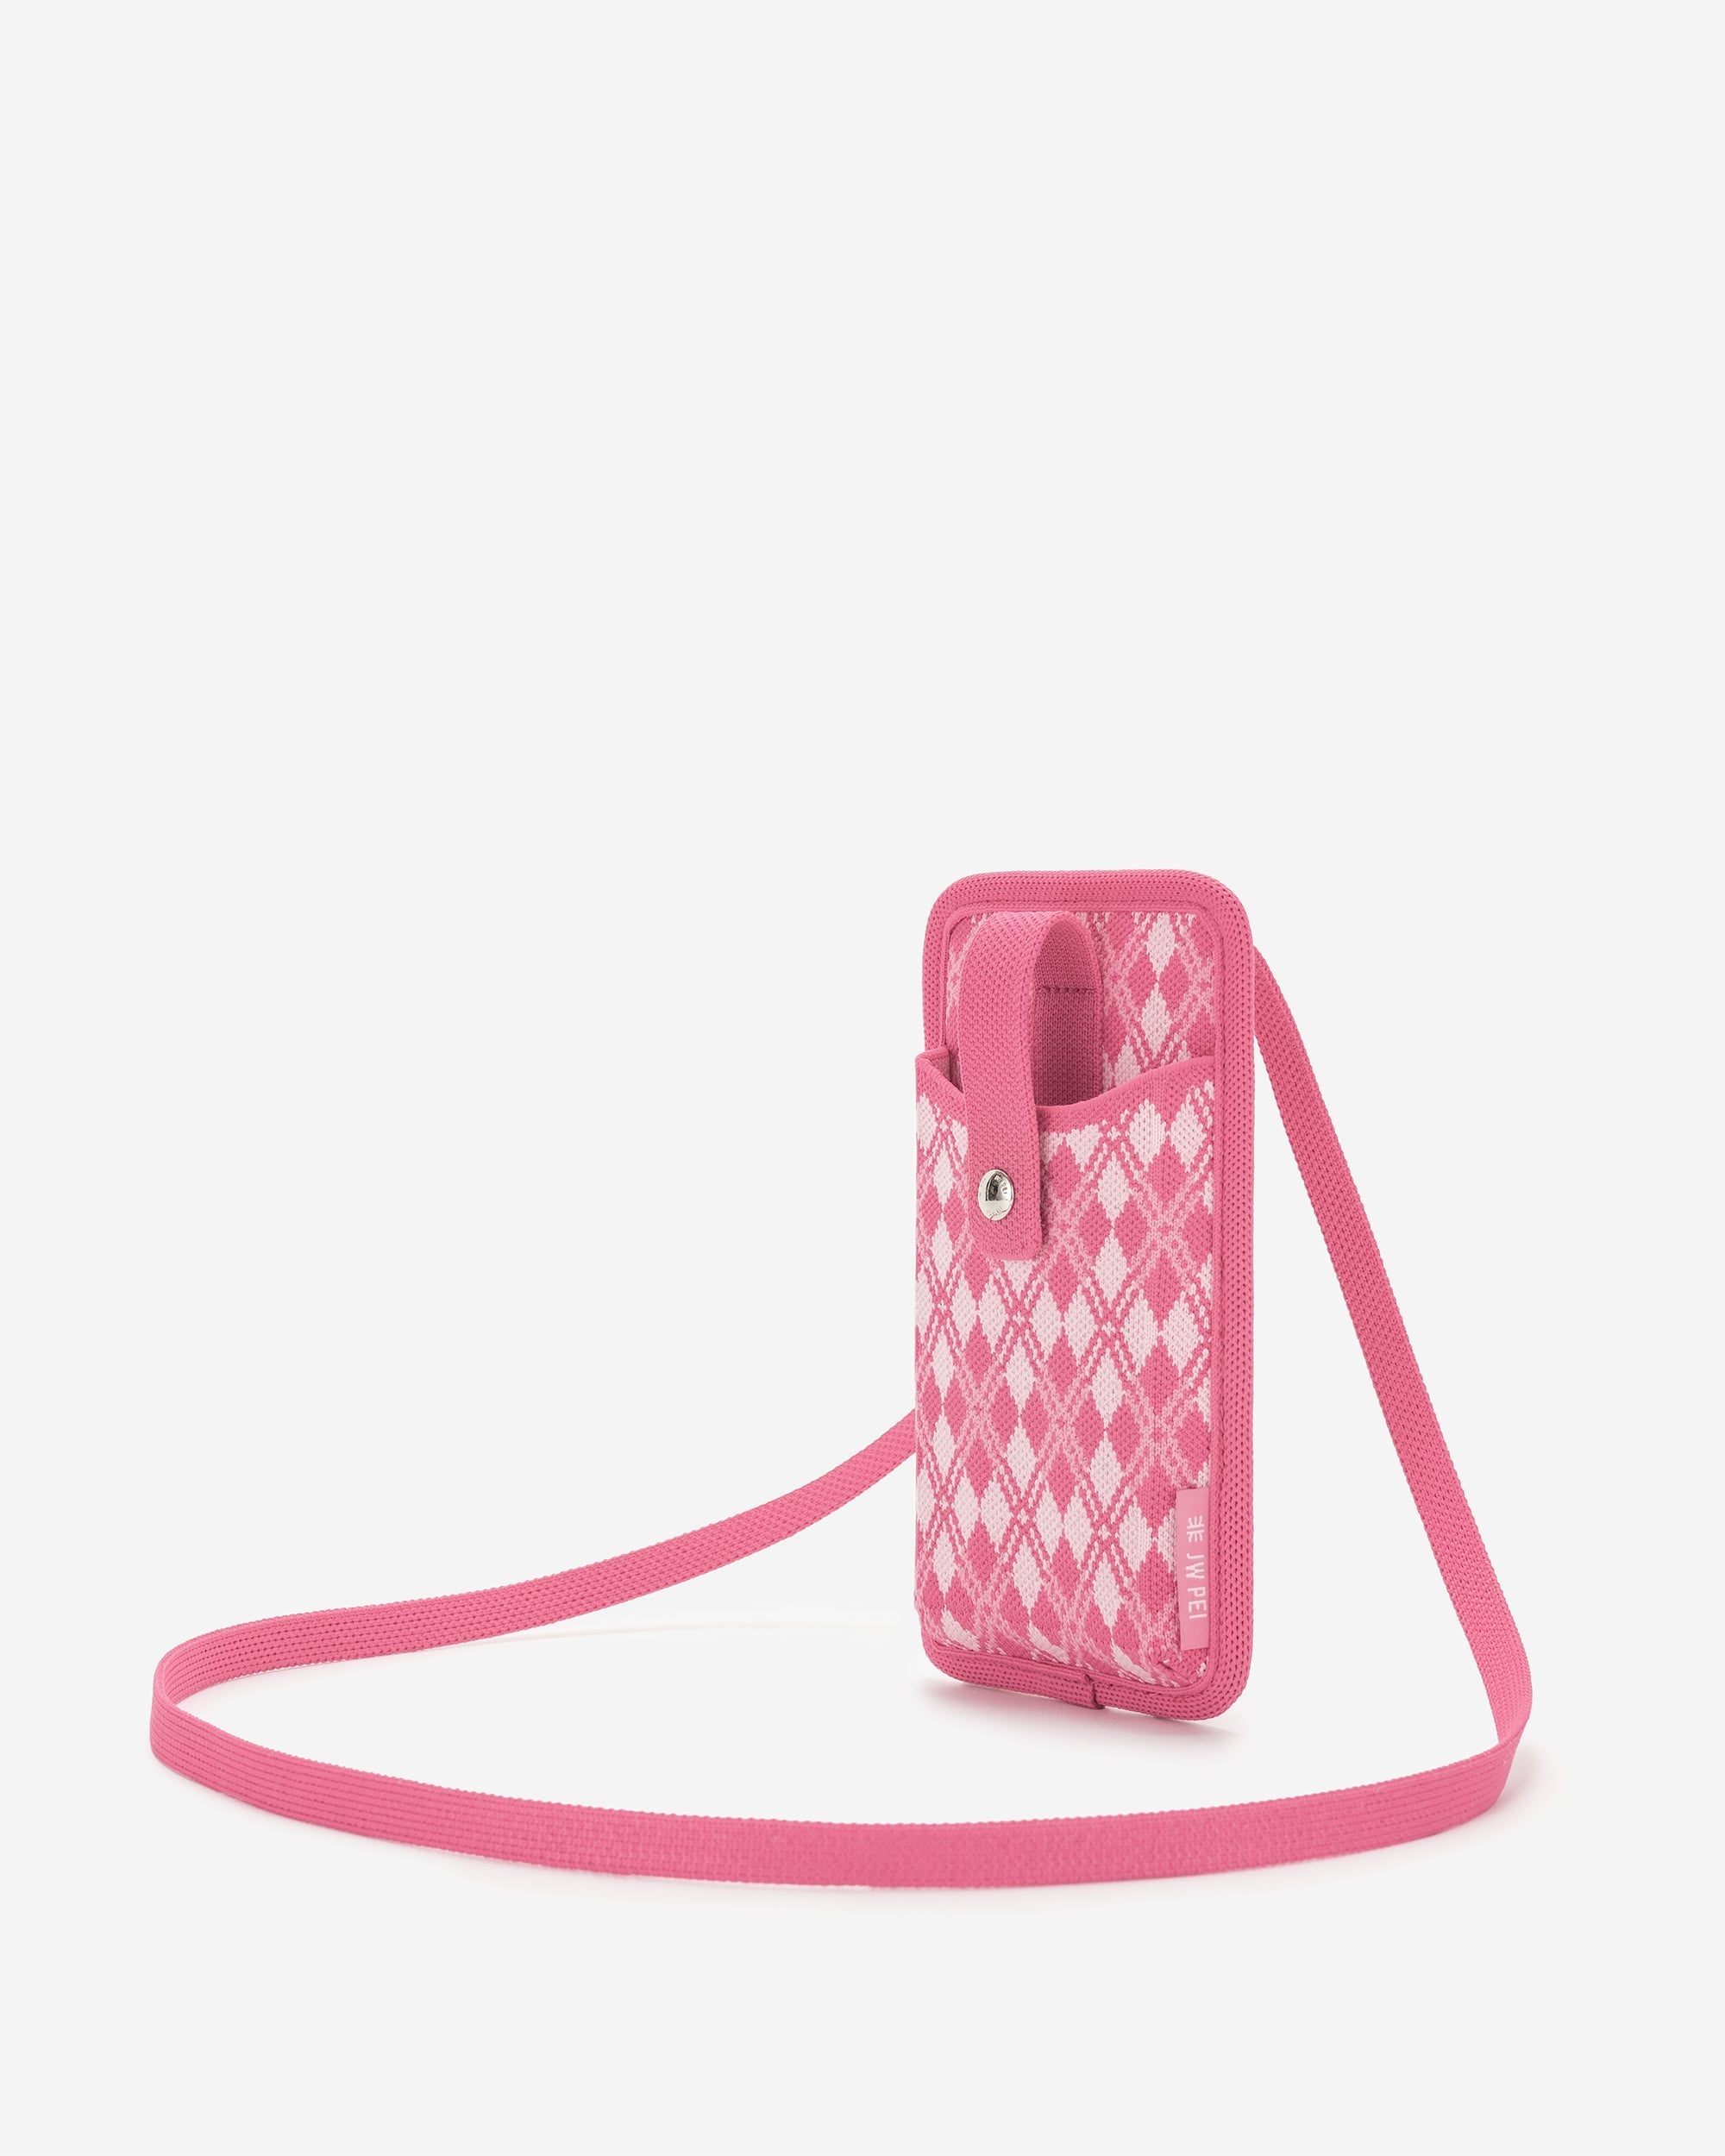 Aylin 針織手機包 - 粉色 & 亮粉色